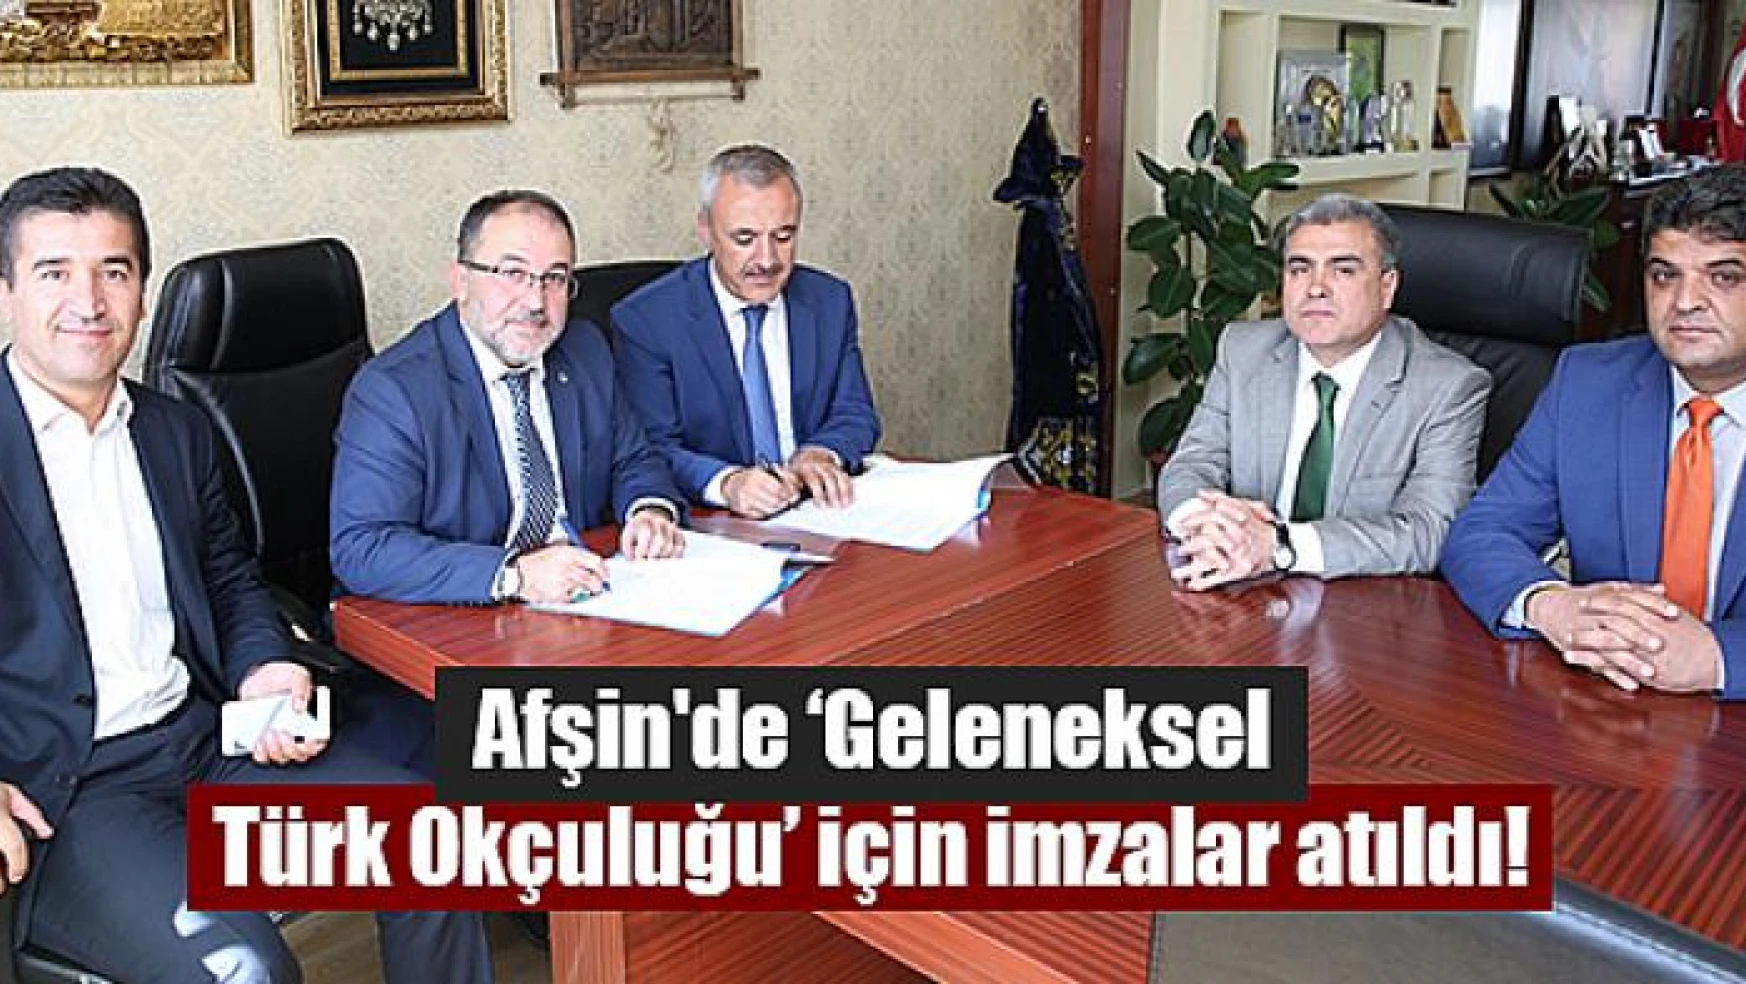 Afşin'de 'Geleneksel Türk Okçuluğu' için imzalar atıldı!